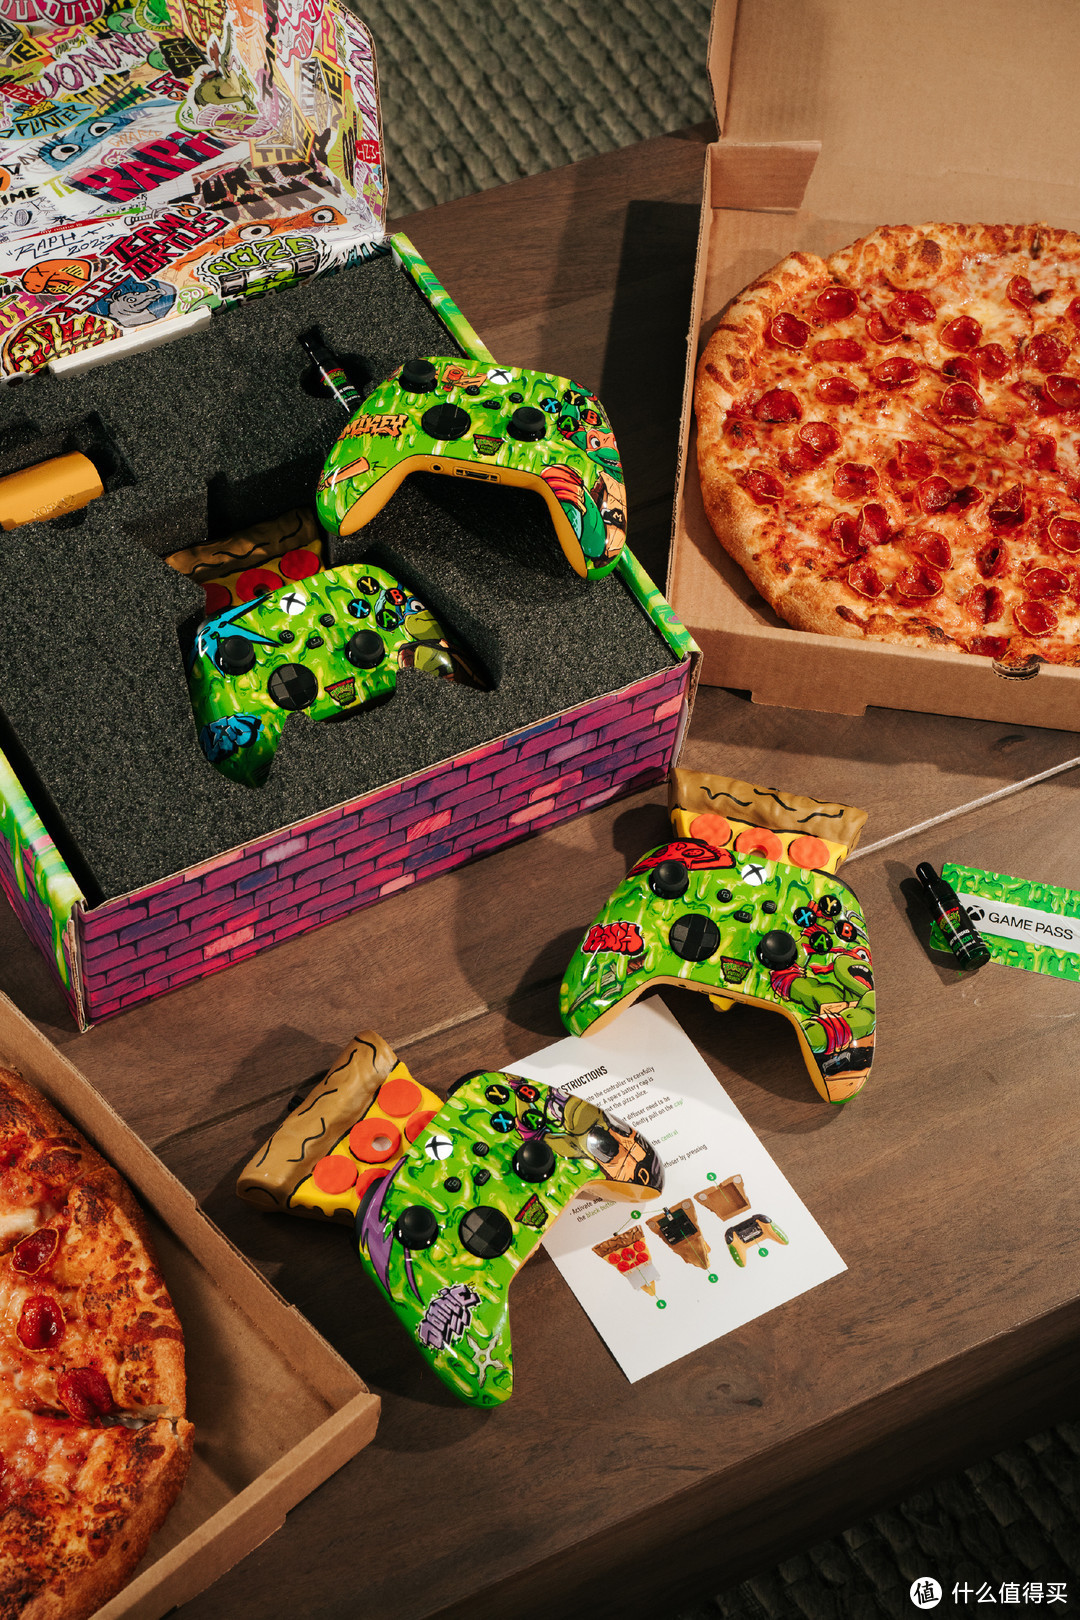 《忍者神龟:变种大乱斗》定档8.11，Xbox联合派拉蒙推出带有披萨香味的限定手柄～